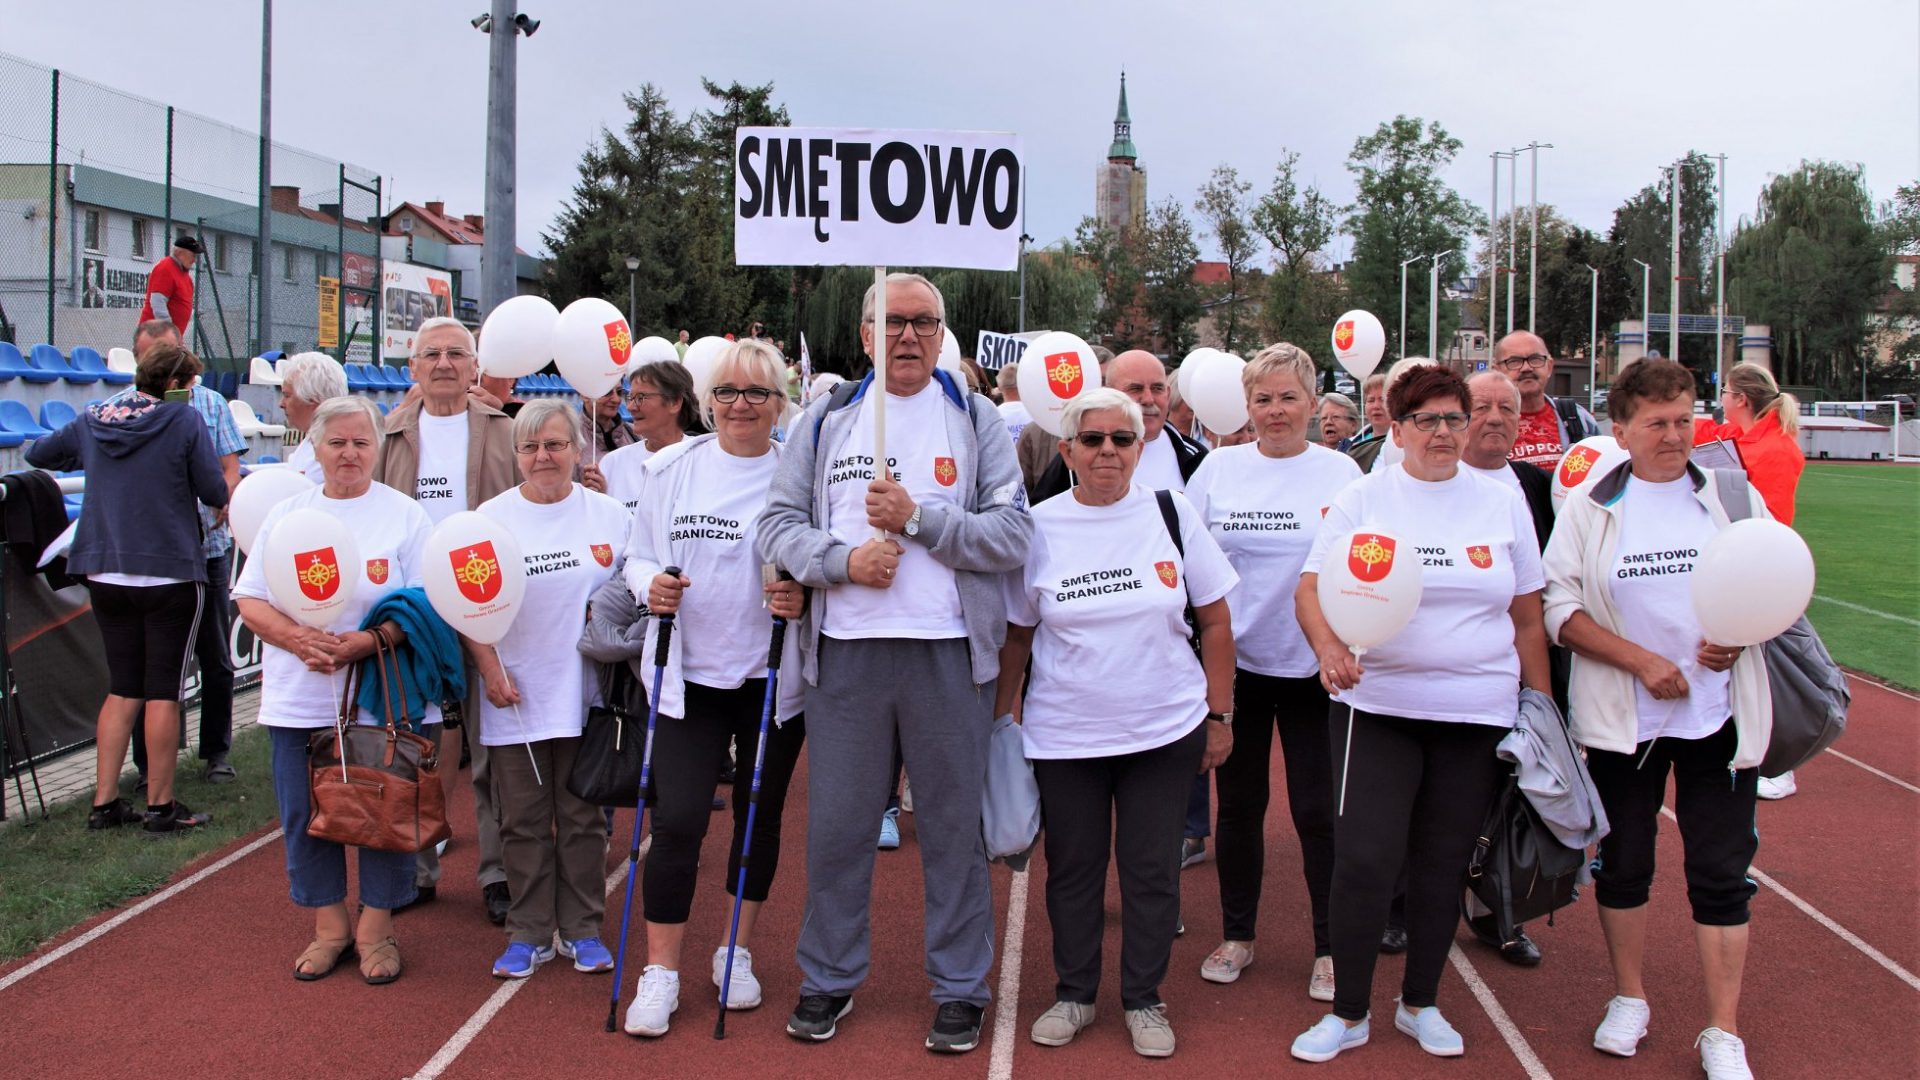 Członkowie klubu seniora ubrani na sportowo w koszulki z logo gminy Smętowo Graniczne stojący na bieżni stadionu